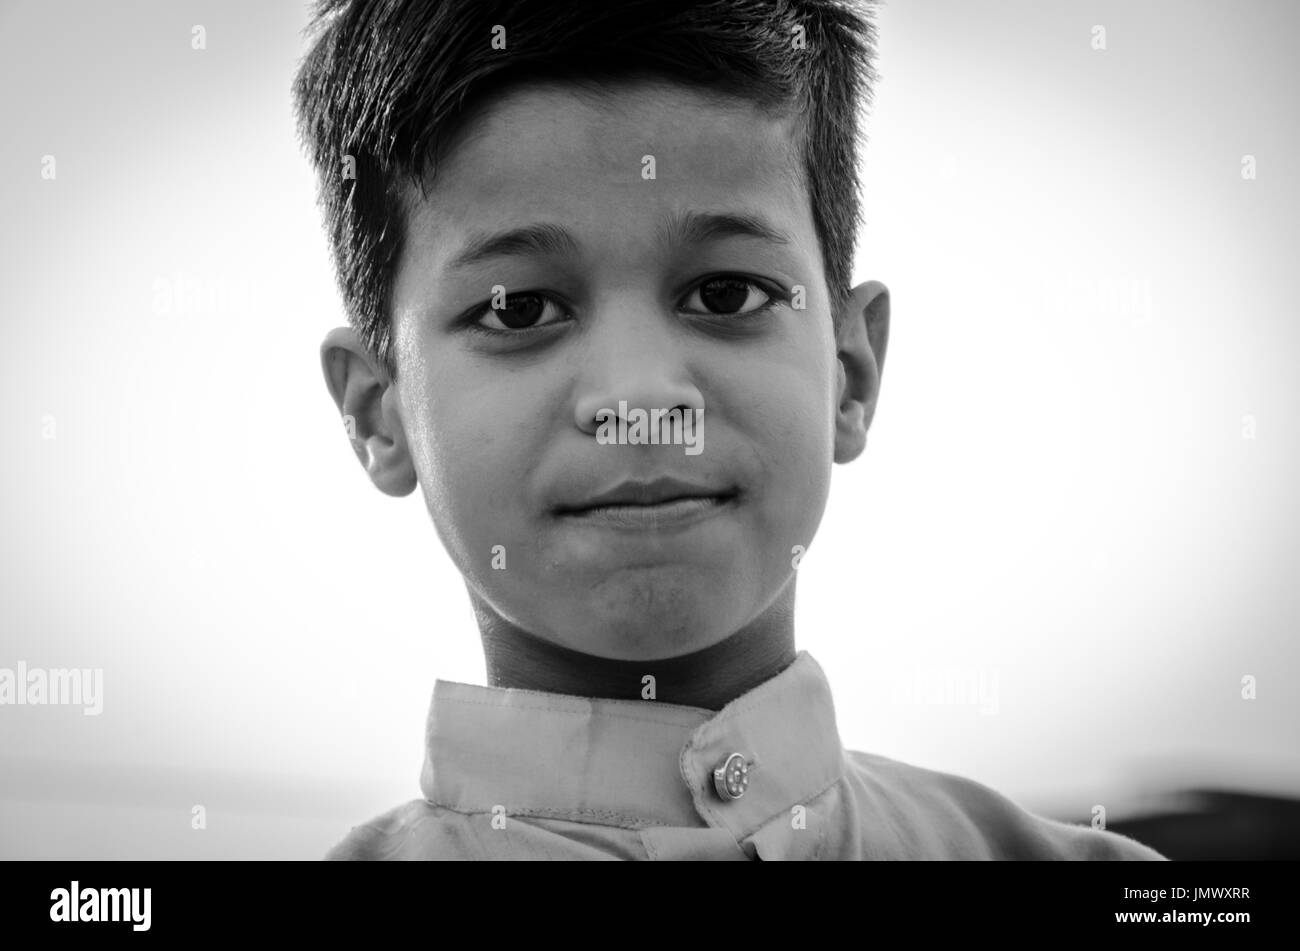 Jama Masjid, la Vecchia Delhi, India - 24 giugno 2017 : immagine monocromatica del ritratto di un simpatico ragazzo indiano che è venuto ad offrire la preghiera, come si celebra il las Foto Stock